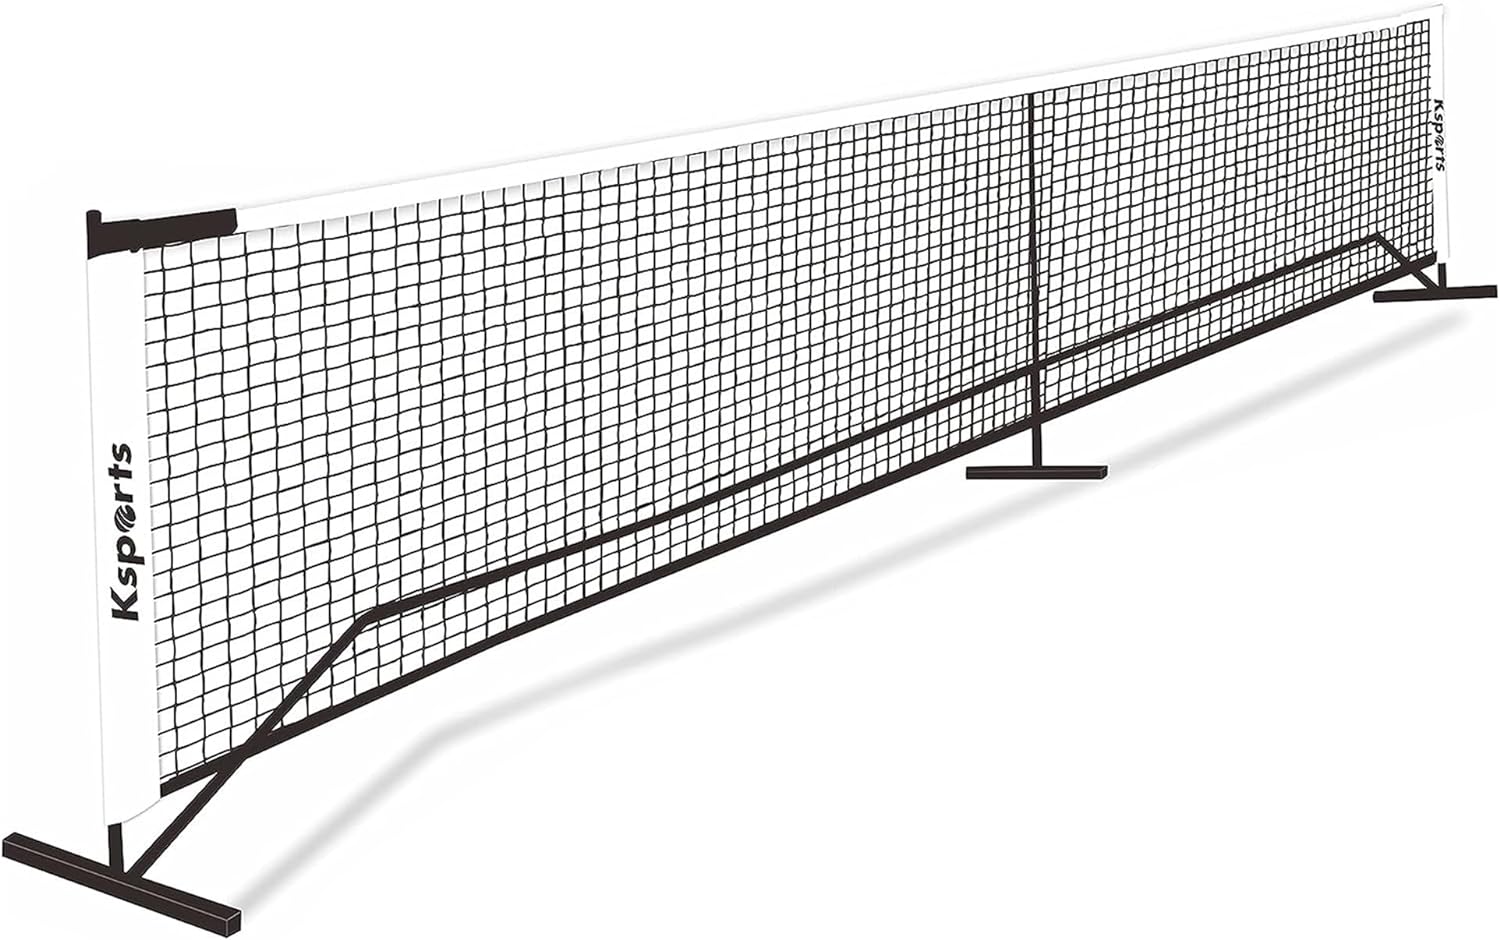 Ksports Regulation Size Pickleball Net 22 Feet White (KSU9001)